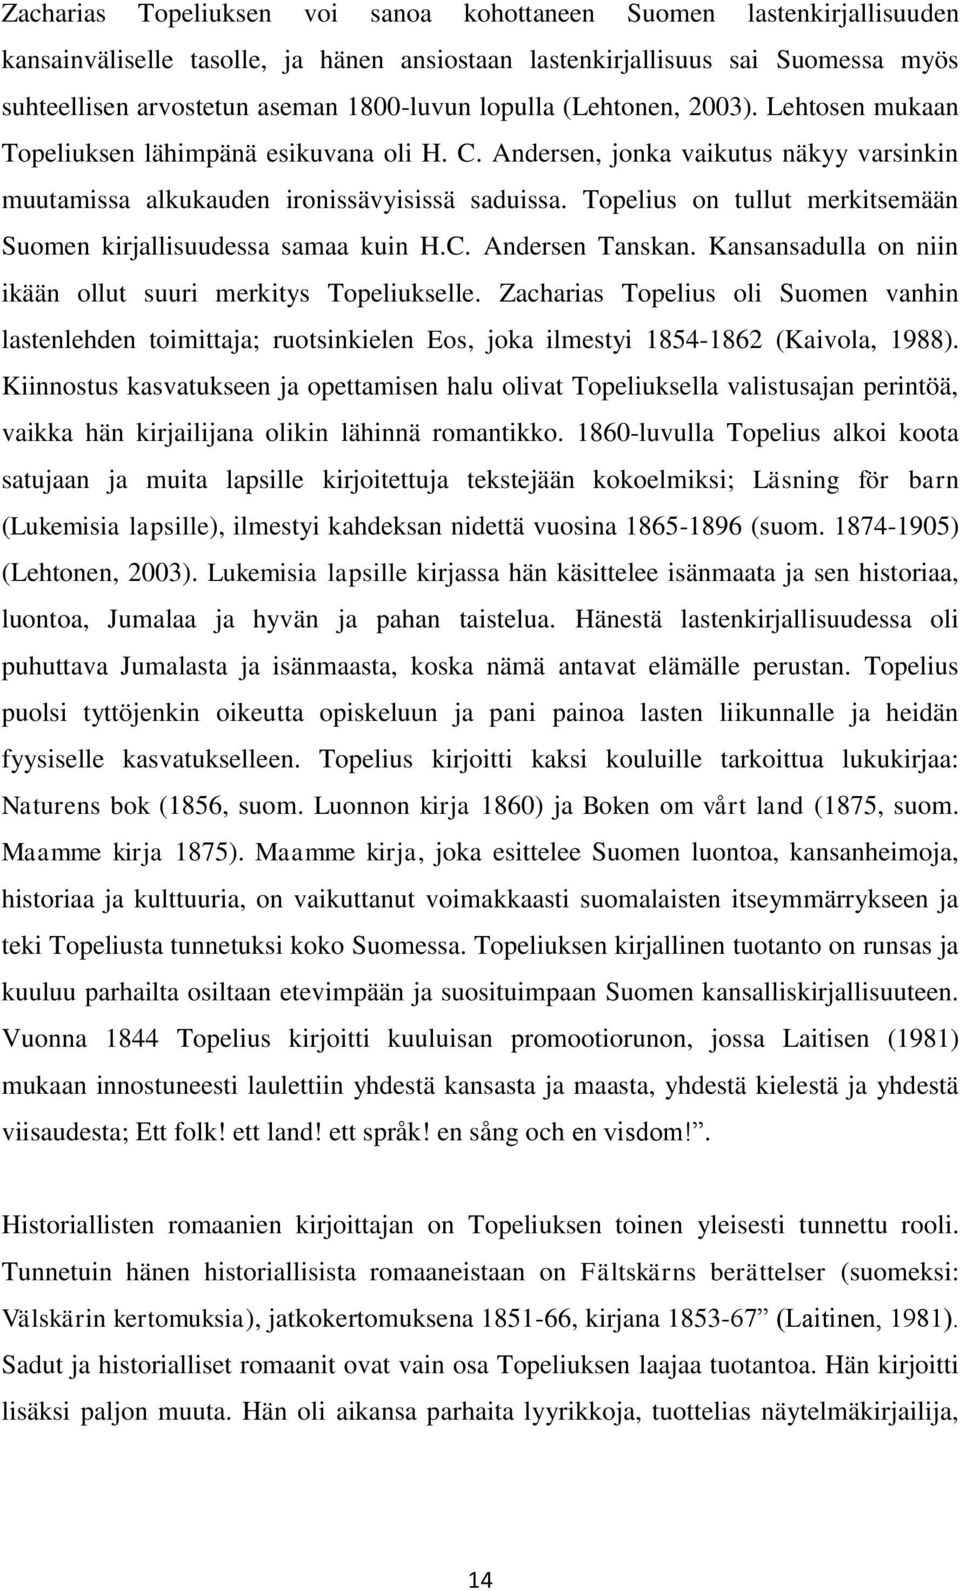 Topelius on tullut merkitsemään Suomen kirjallisuudessa samaa kuin H.C. Andersen Tanskan. Kansansadulla on niin ikään ollut suuri merkitys Topeliukselle.